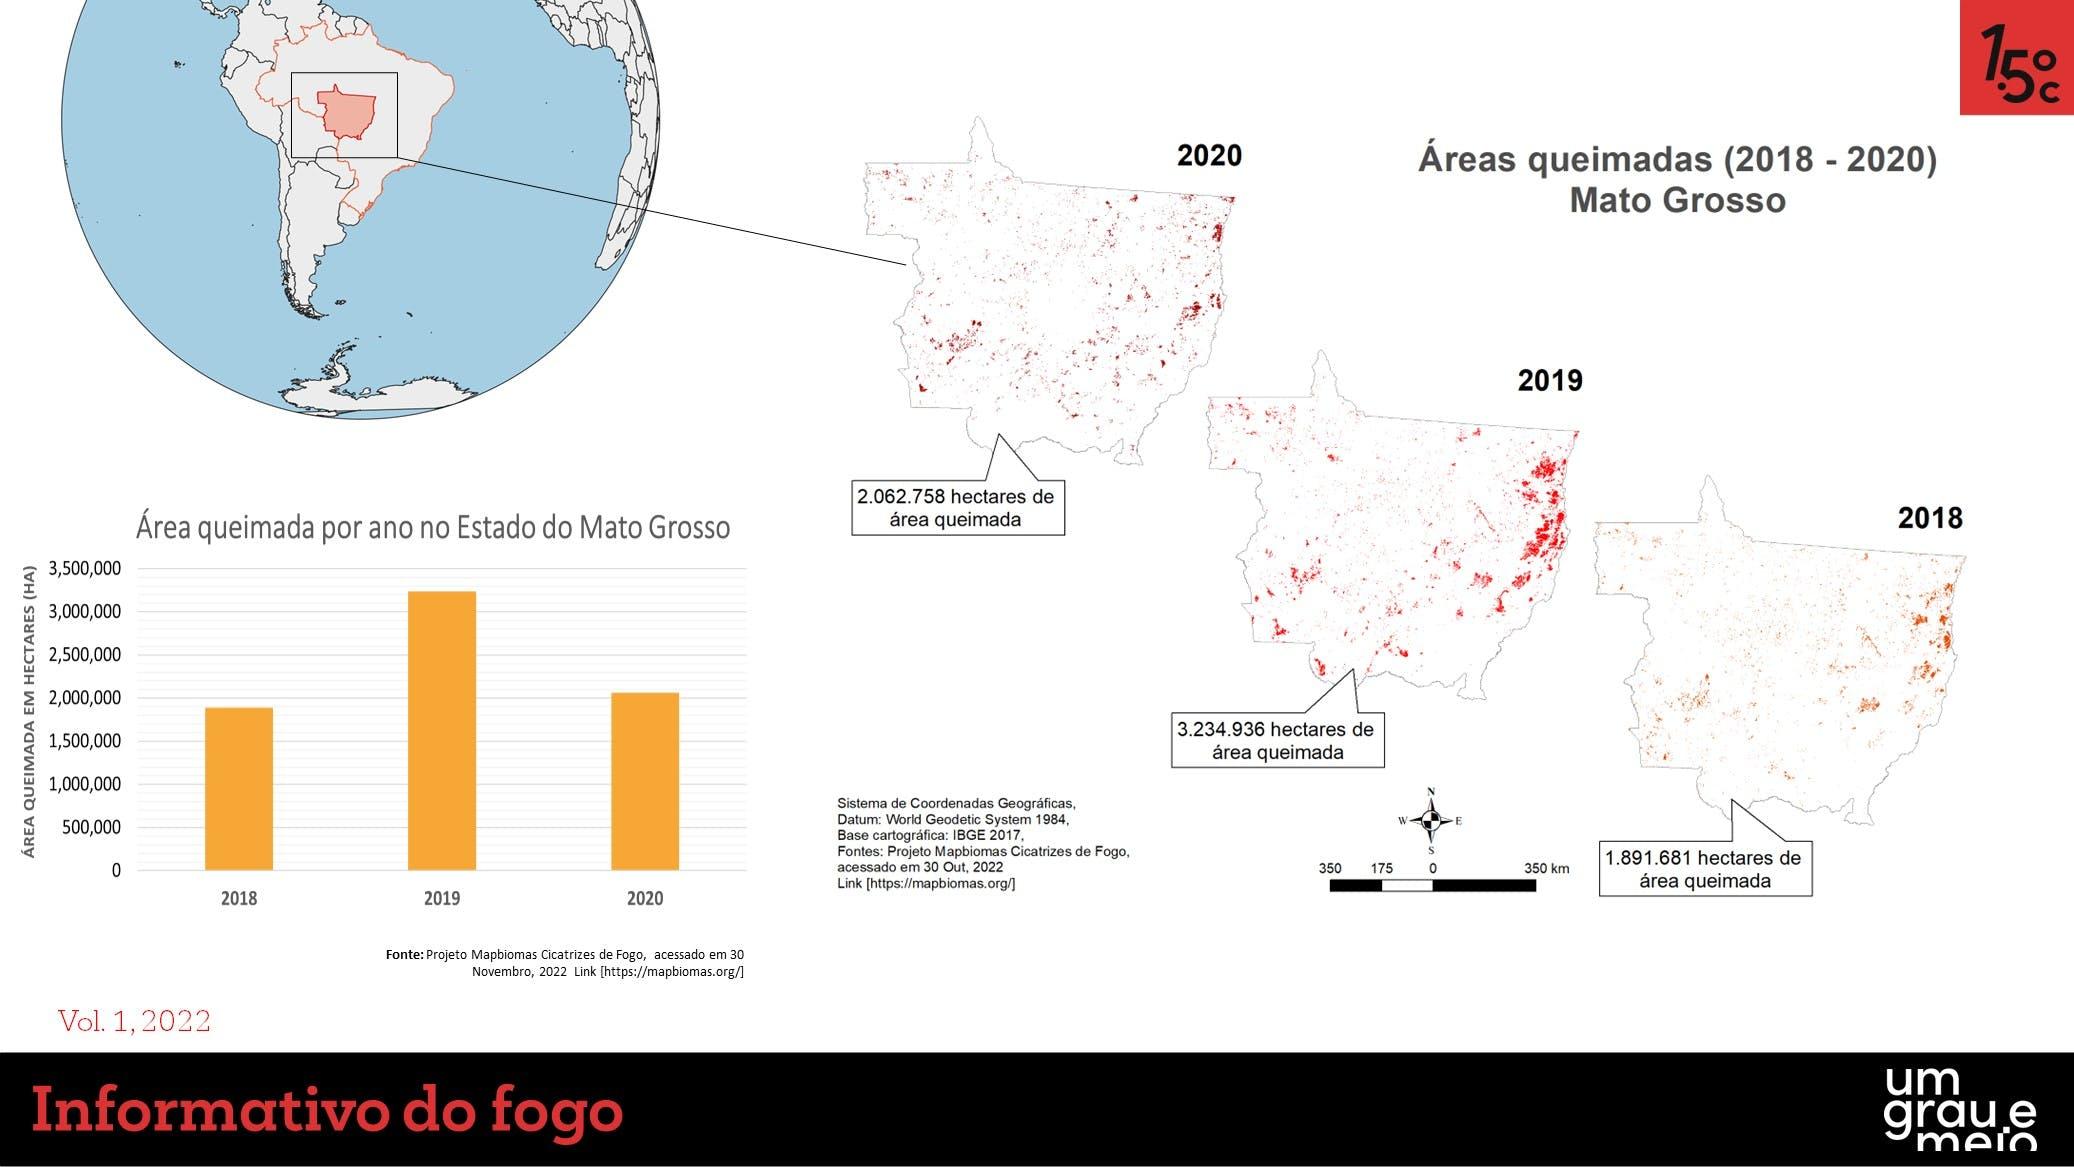 Gráficos informativos sobre a evolução das queimadas no Mato Grosso de 2018 a 2020